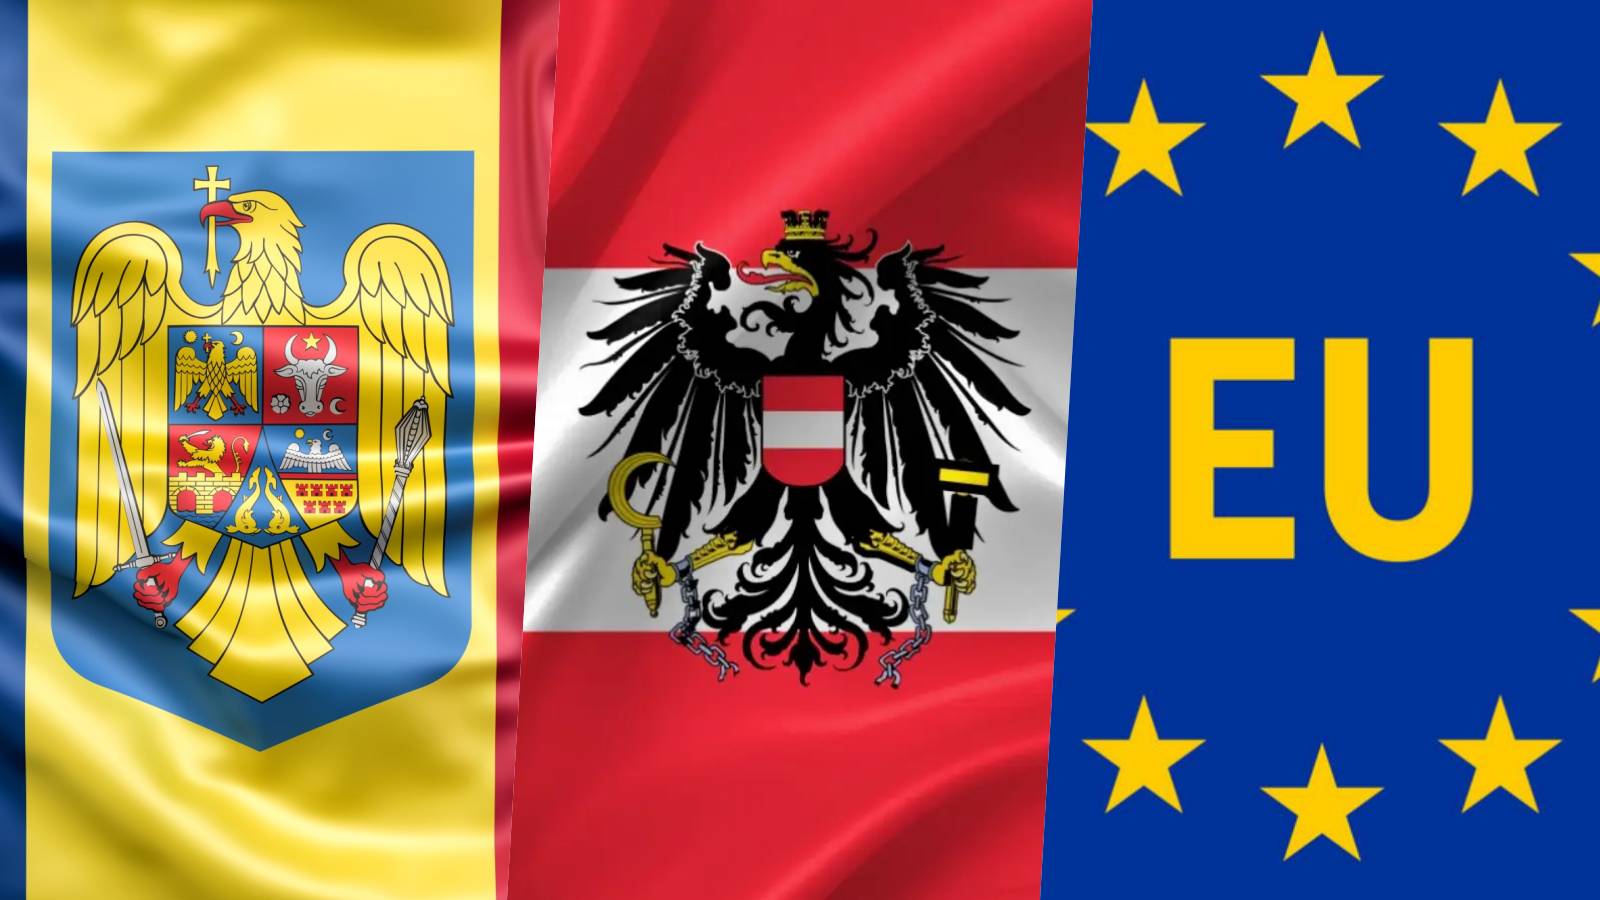 Austria Face IMPOSIBILA Aderarea Romaniei Schengen 2024 Karl Nehammer Anuntat Decizia